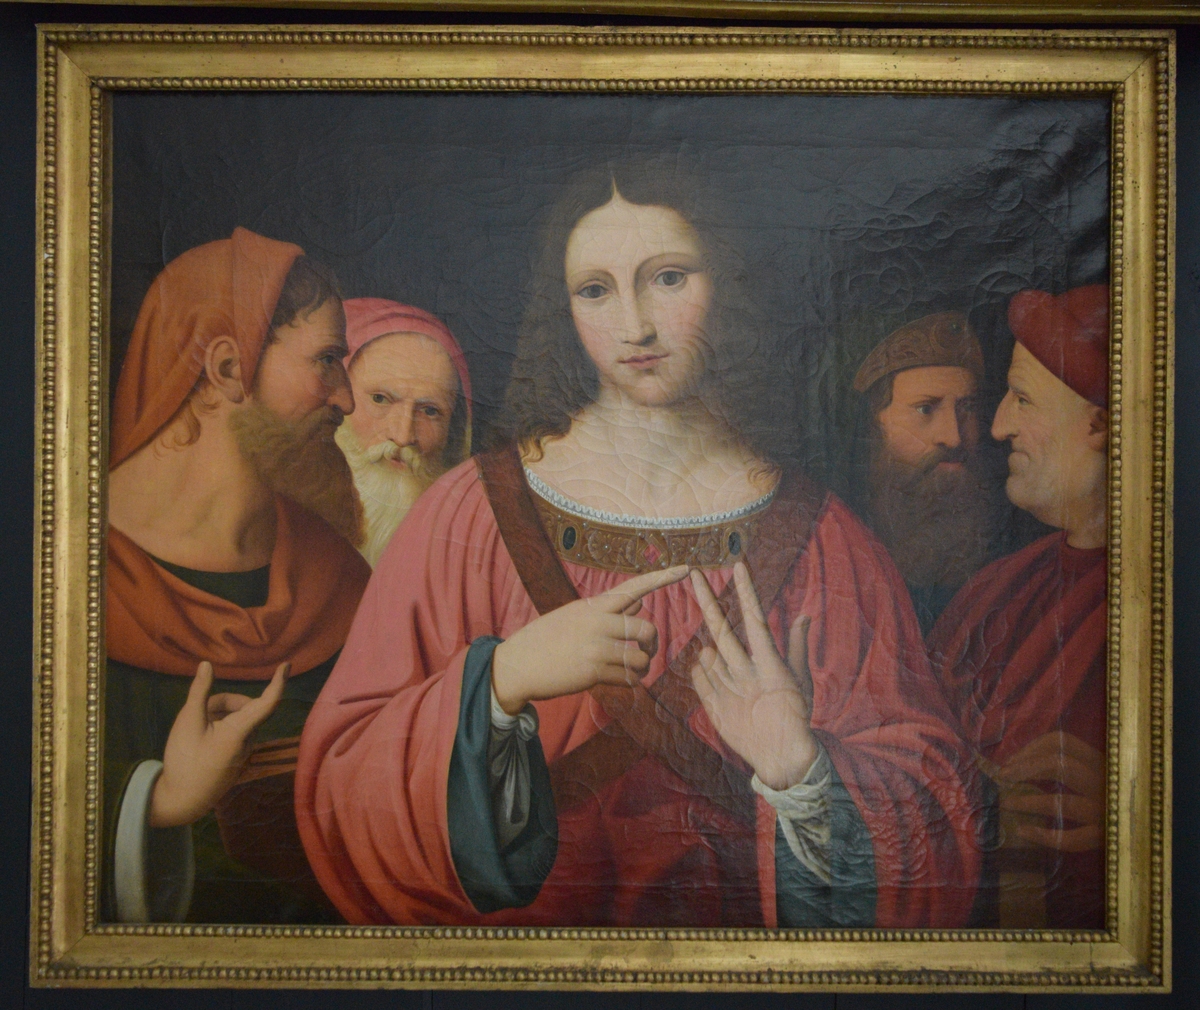 Bildet viser Jesus kledd i rød kjortel i diskusjon med de skriftlærde. Gesten han gjør kan være telling av argumenter på fingrene,  det er kjent at dette var en hukommelsesteknikk også i antikken. Jesus er omgitt av to lærde på hver side. Bakgrunnen er mørk. På venstre side går ikke motivet helt ut til kanten, men ender i en bråbrun kant. 

Maleriet er en kopi av av et bild eav Leonardo da Vinci, men det er lite trolig at det er en direkte kopi. National gallery i London har en Leonardo-kopi utført avLuini, og denne har temmelig nøyaktig de samme målene osm det aktuelle maleriet på Gimle. Det er trolig at bildet derfor kan være en kopi av det malt av Luini. i forhold til Leonardos original er maleriet en temmelig god gjengivelse også i detaljer. Imidlertid virker Jesus' ansikt en smule mer feminint på kopien. 
Det originale Leonardo-bildet ble bestilt av Isabel D'Erste 14. mai 1540, og var ferdig omkring 1507.